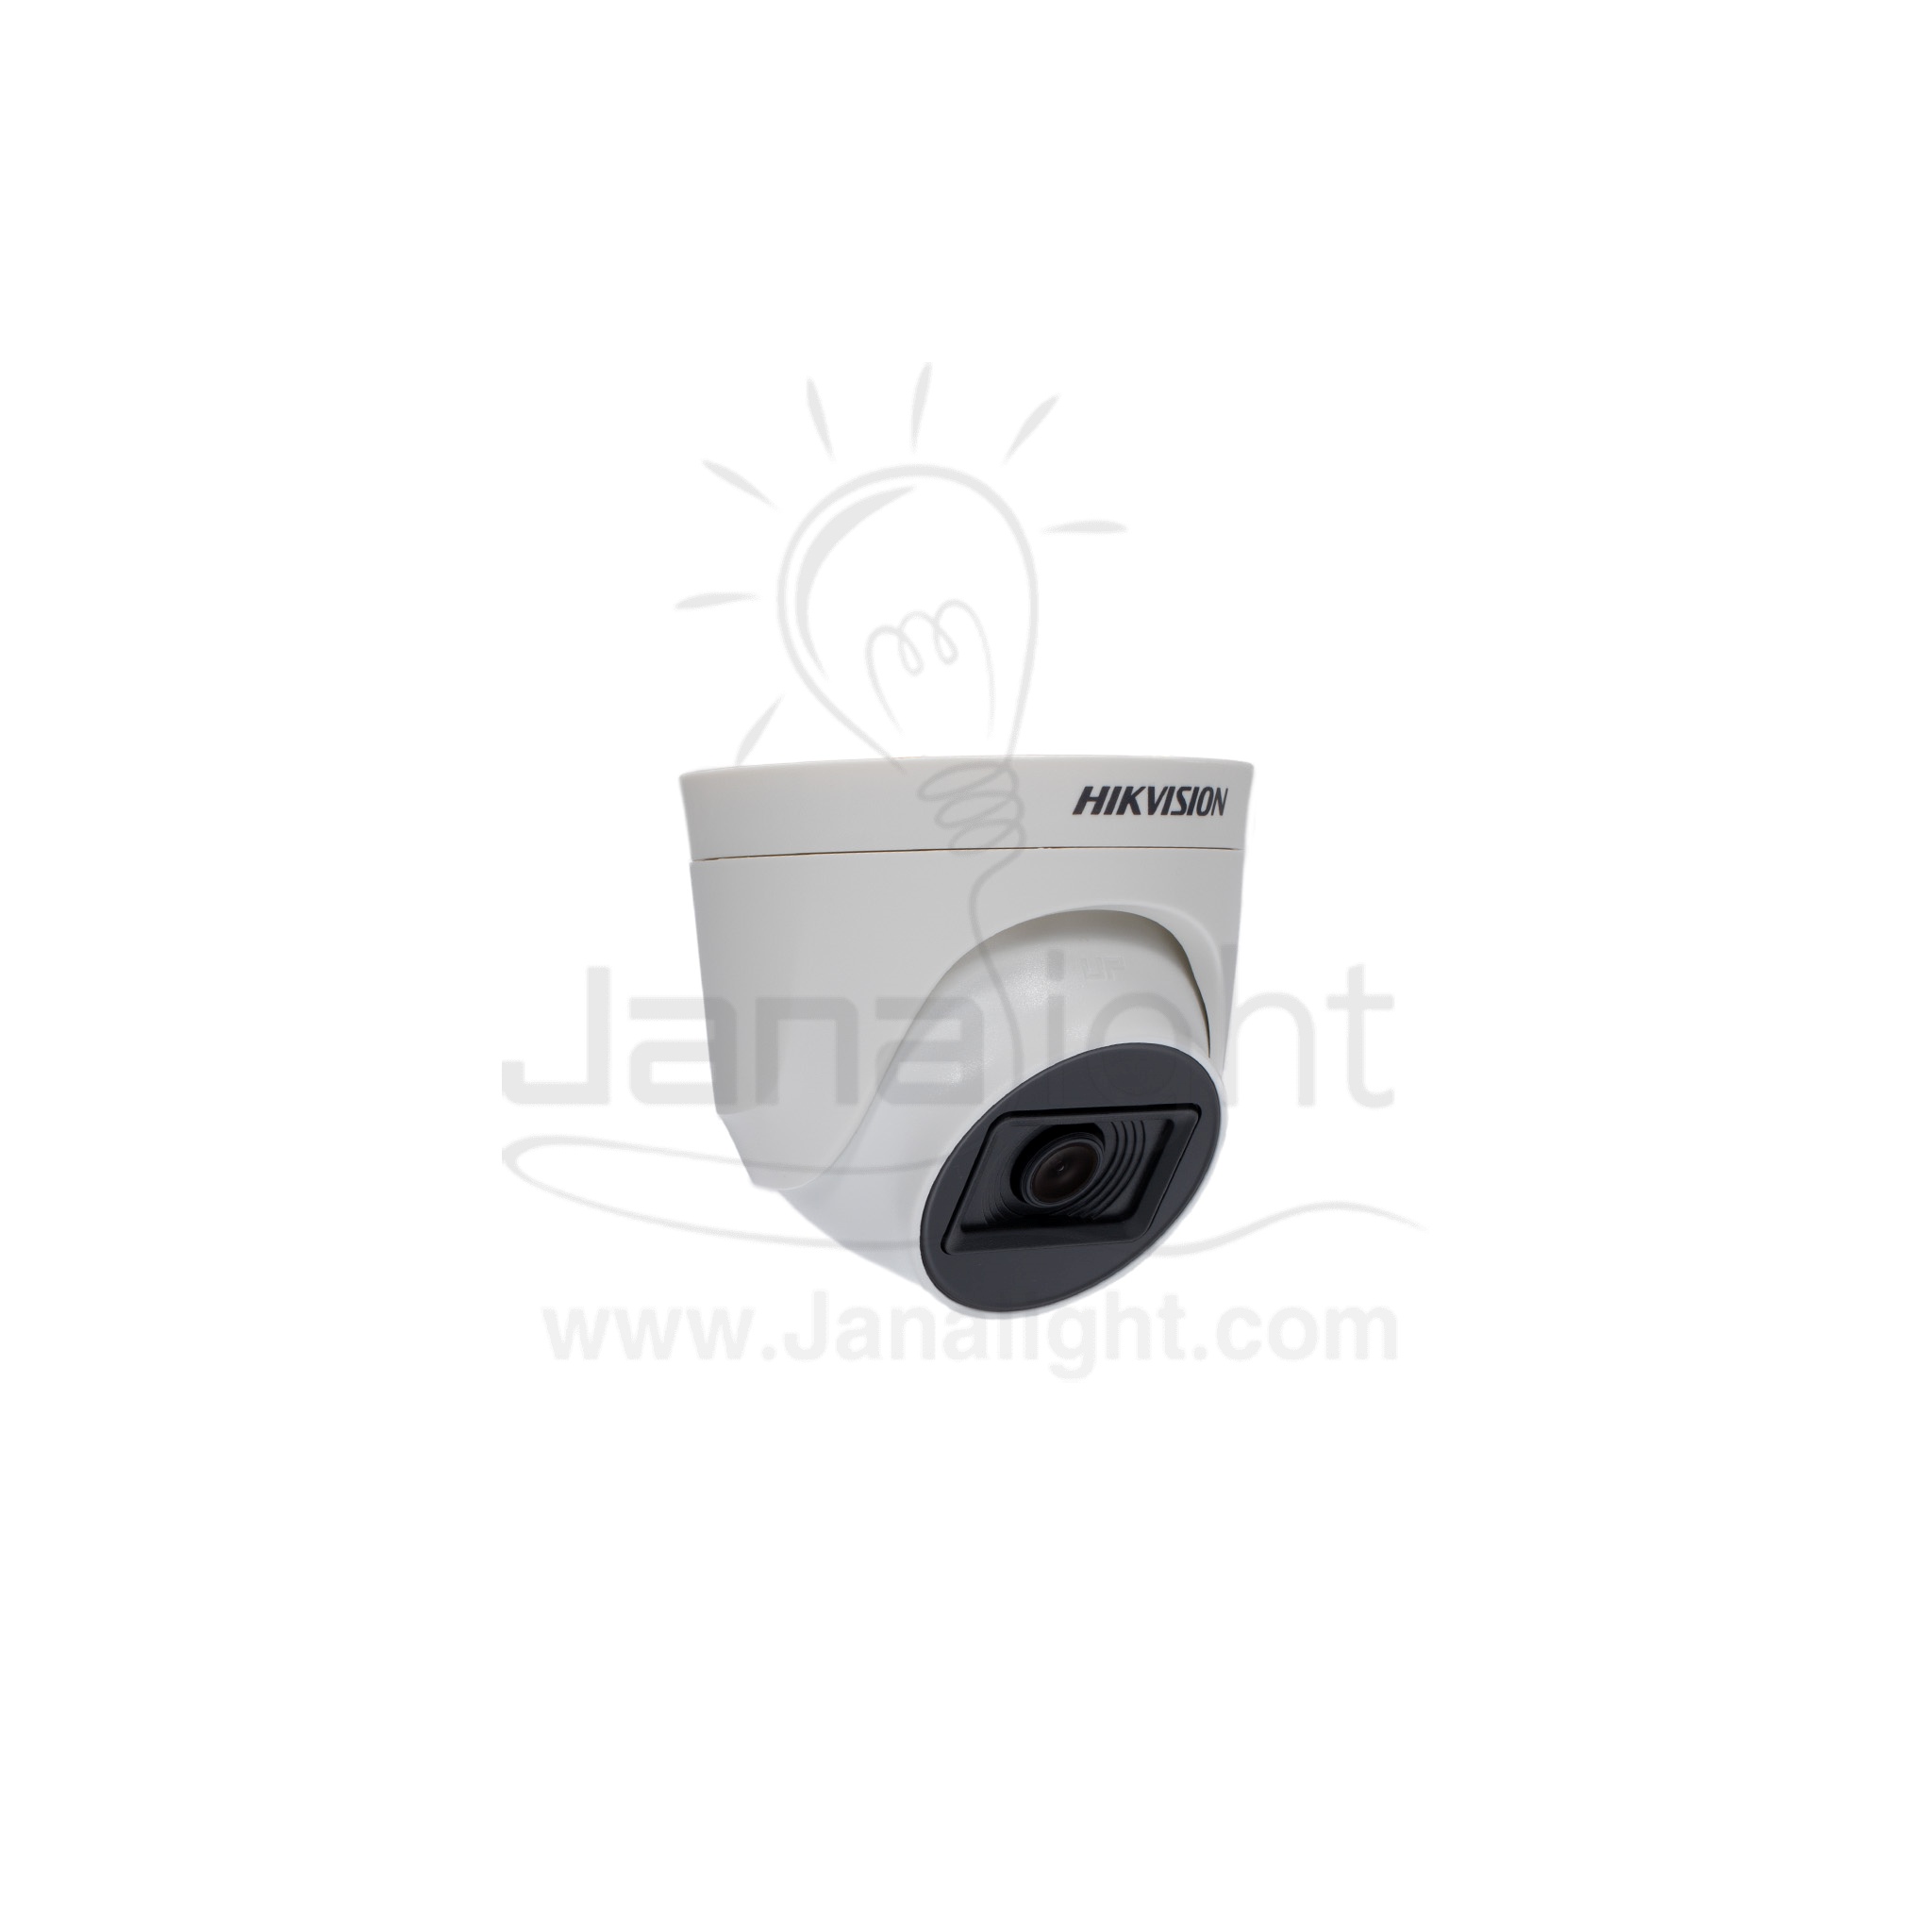 كاميرا داخلية HD هيكفيجن DS-2CE76H0T-ITPF 2.8mm 5MP Camera indoor hikvision 5mp 2.8mm